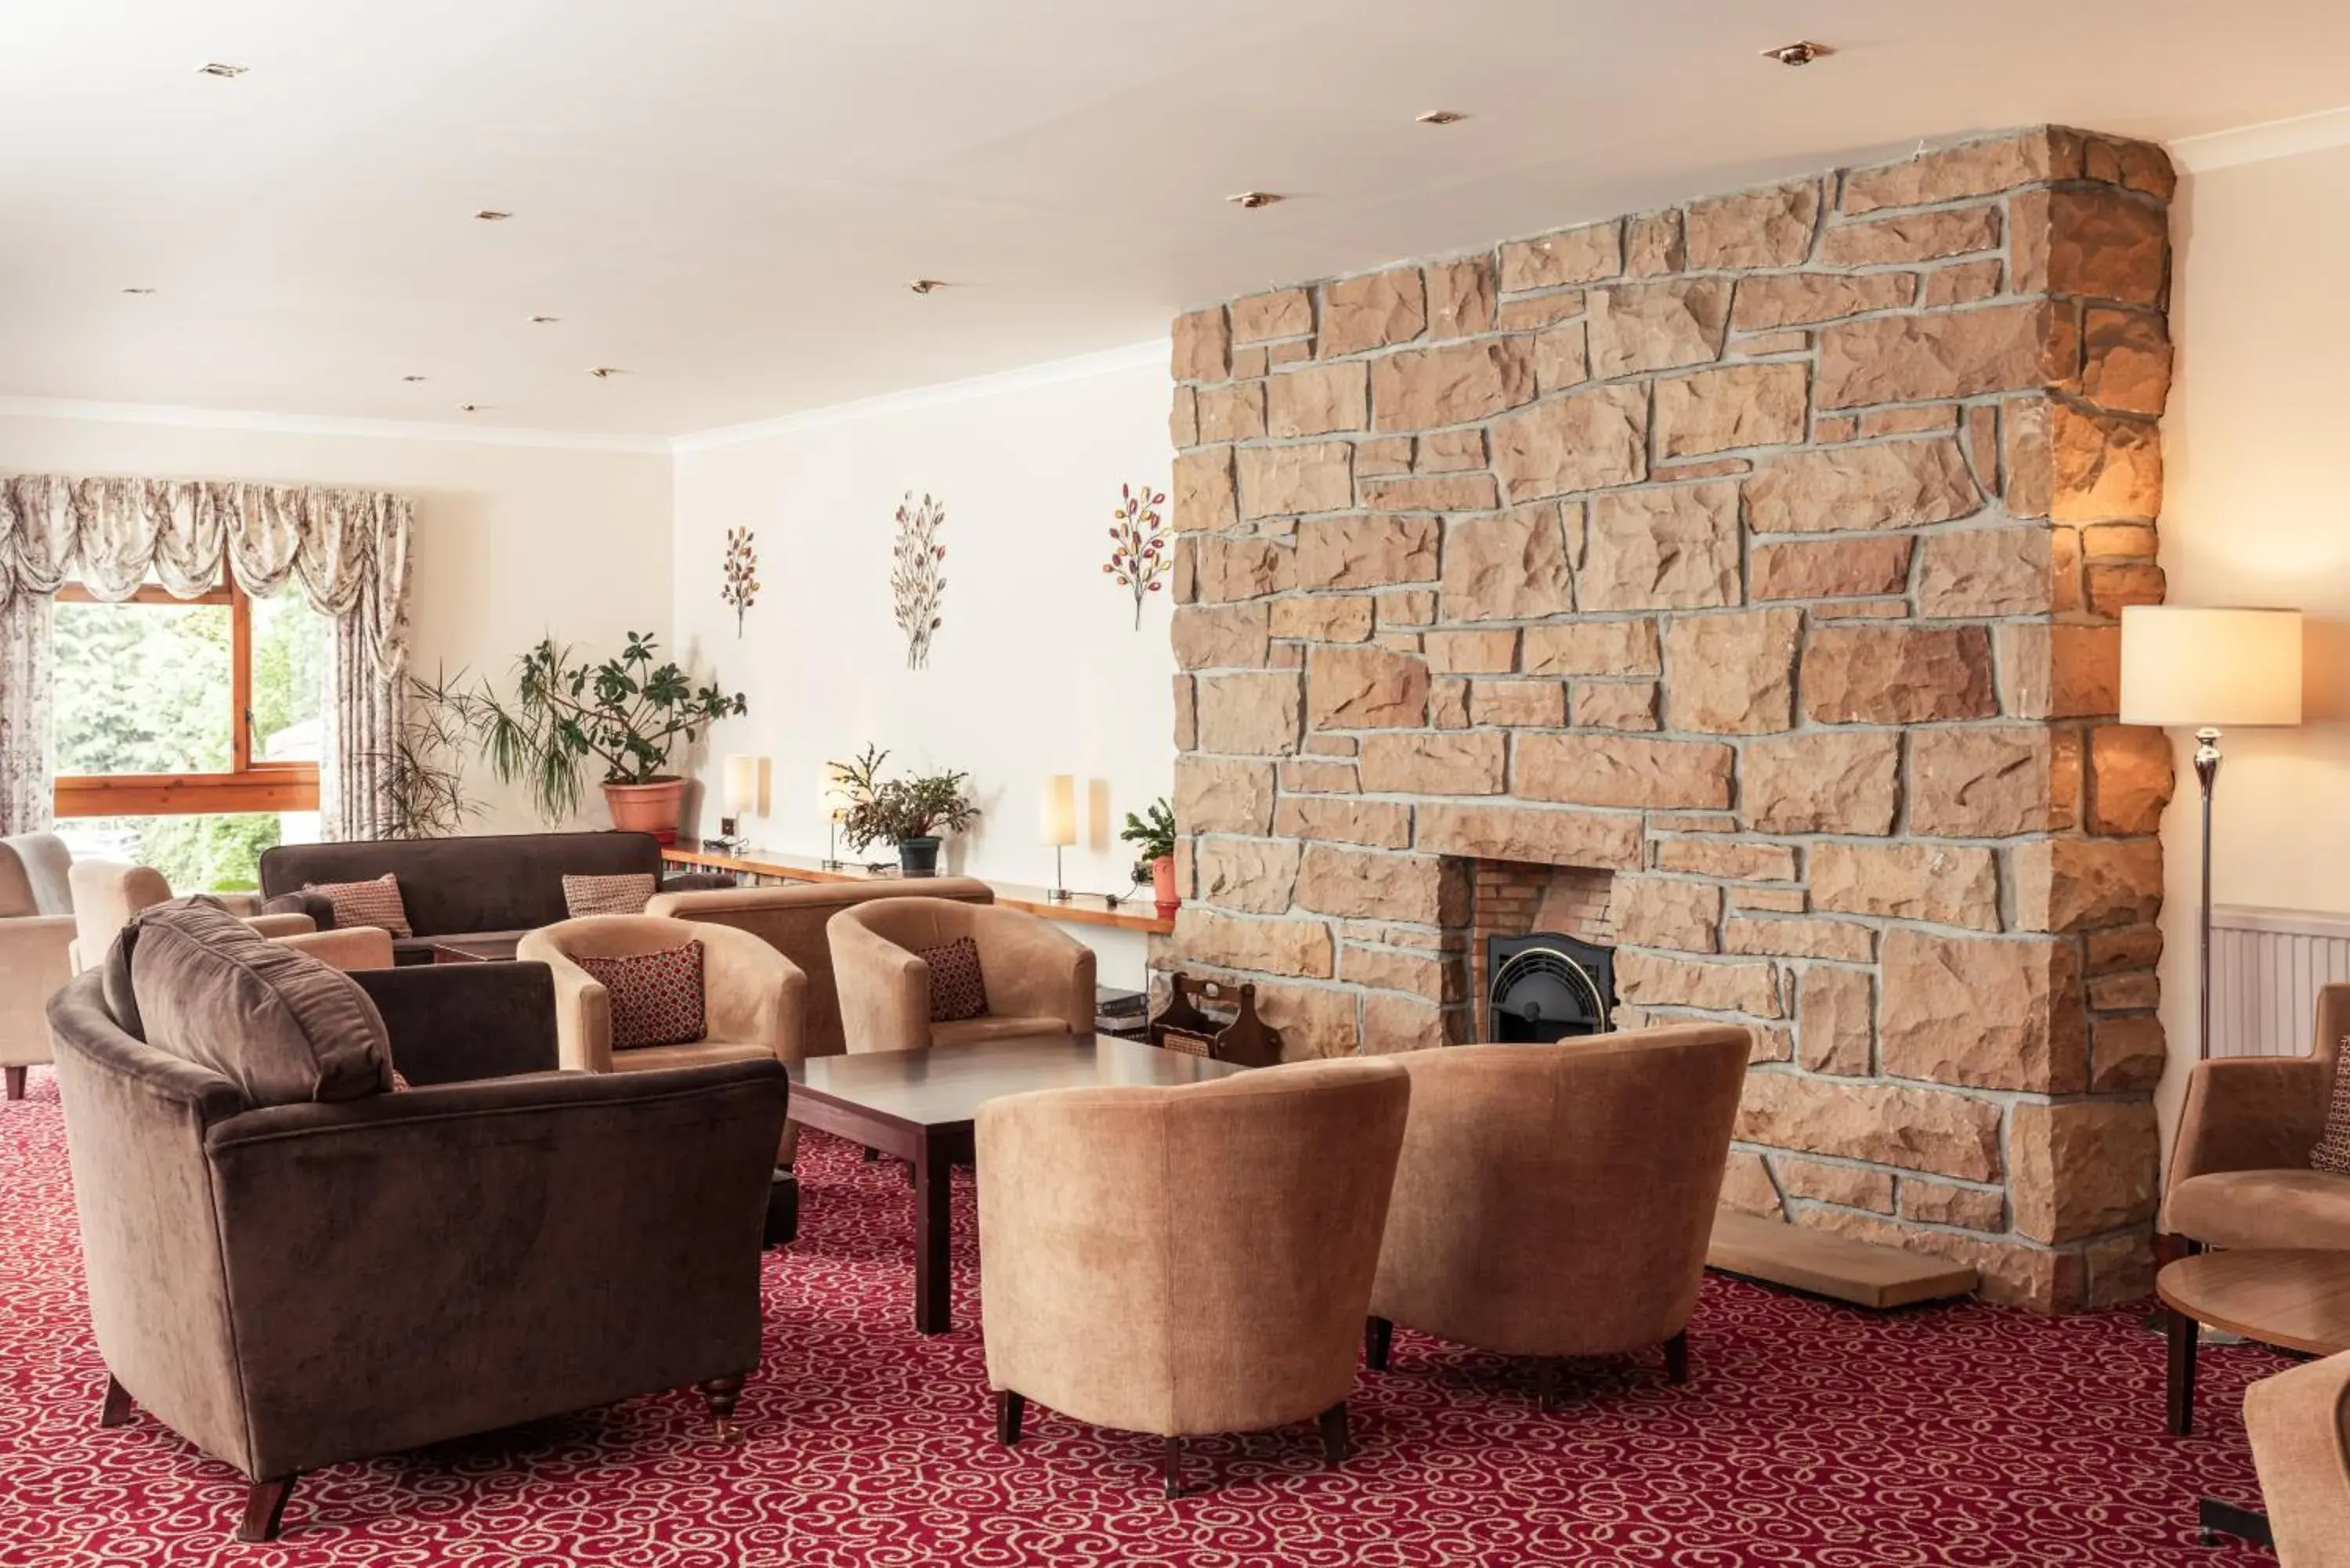 Lounge or bar in Highlander Hotel ‘A Bespoke Hotel’